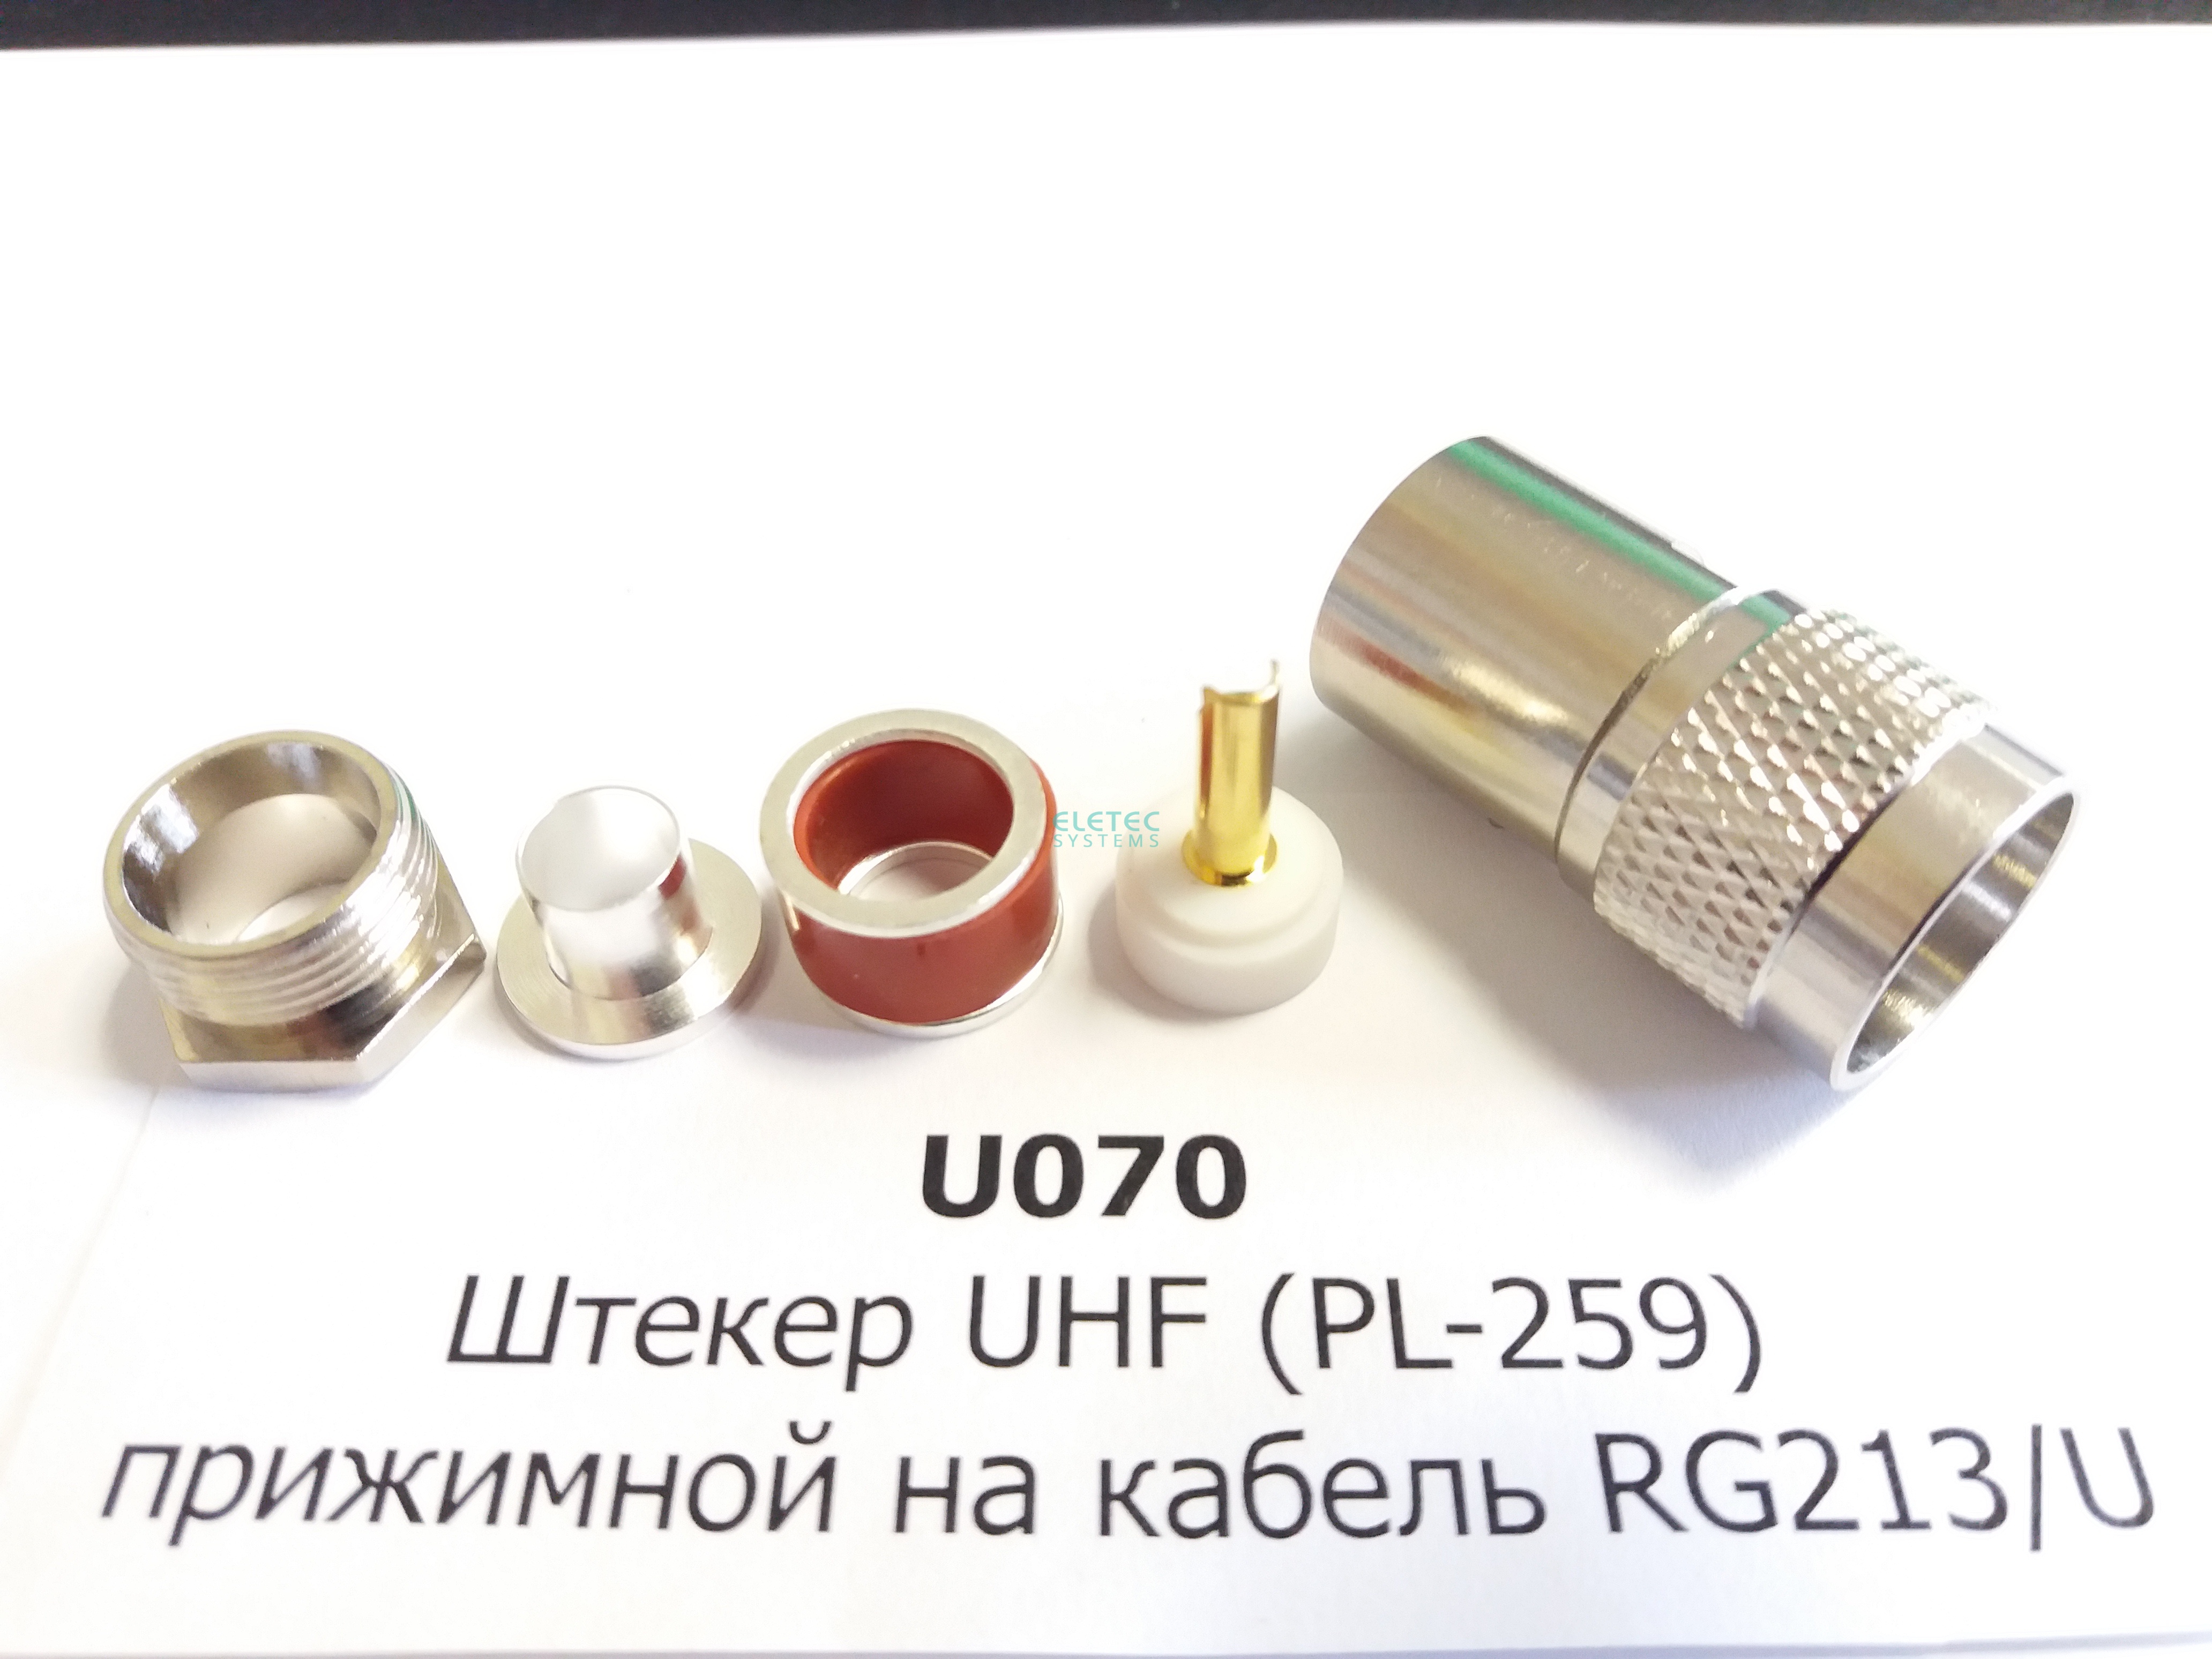 Штекер UHF (PL-259) прижимной на кабель RG213/U (аналог U-112B), индивидуальная упаковка, U070